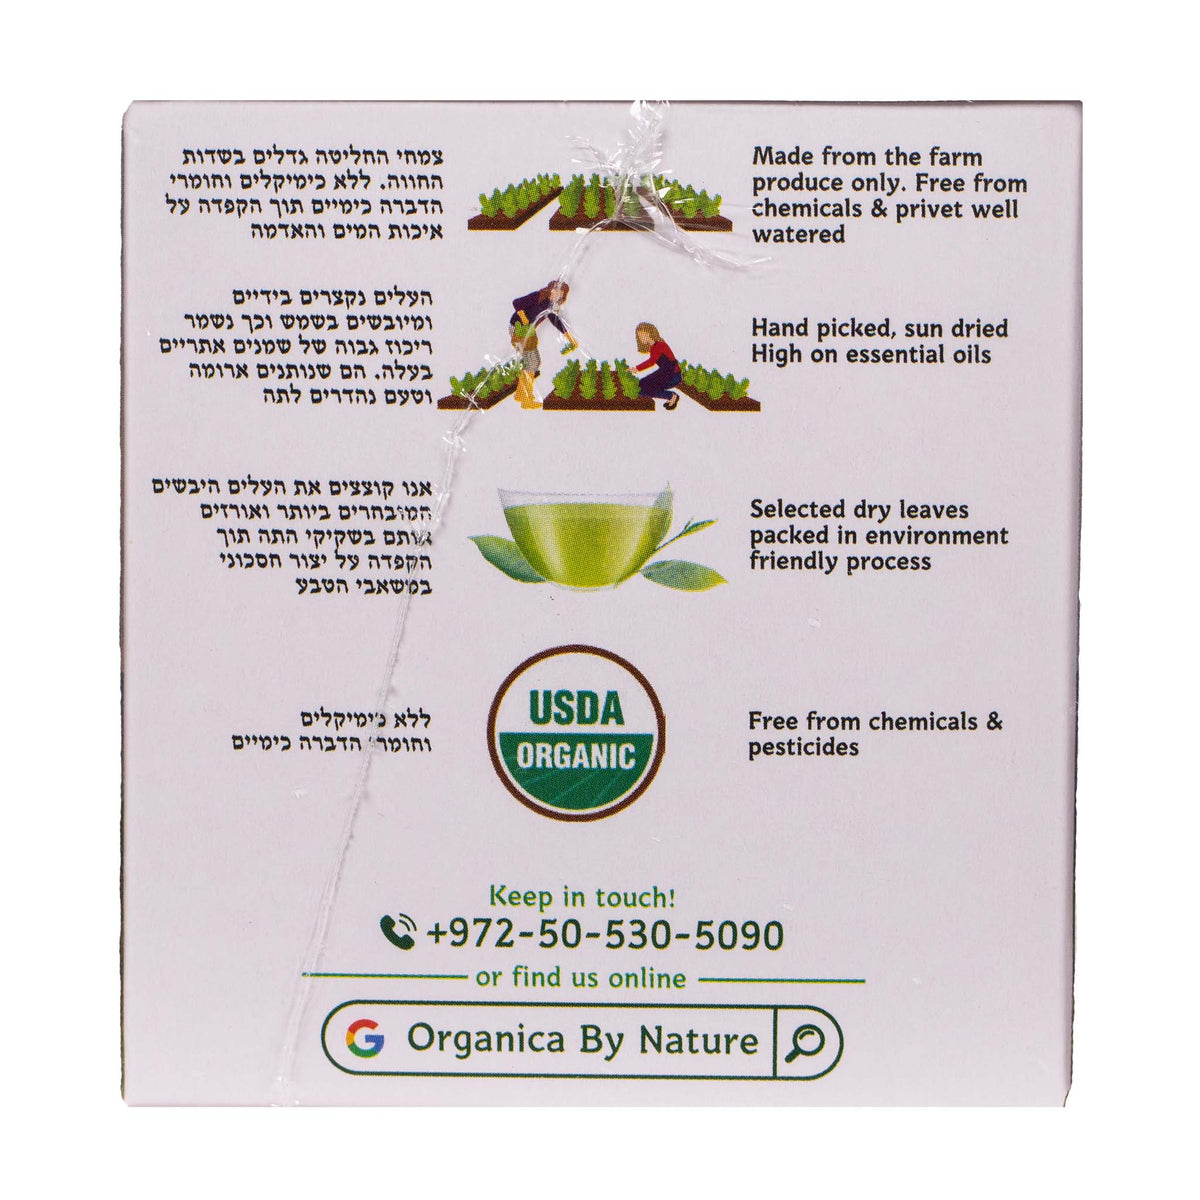 Organic Verbena &amp; White Savory Tea